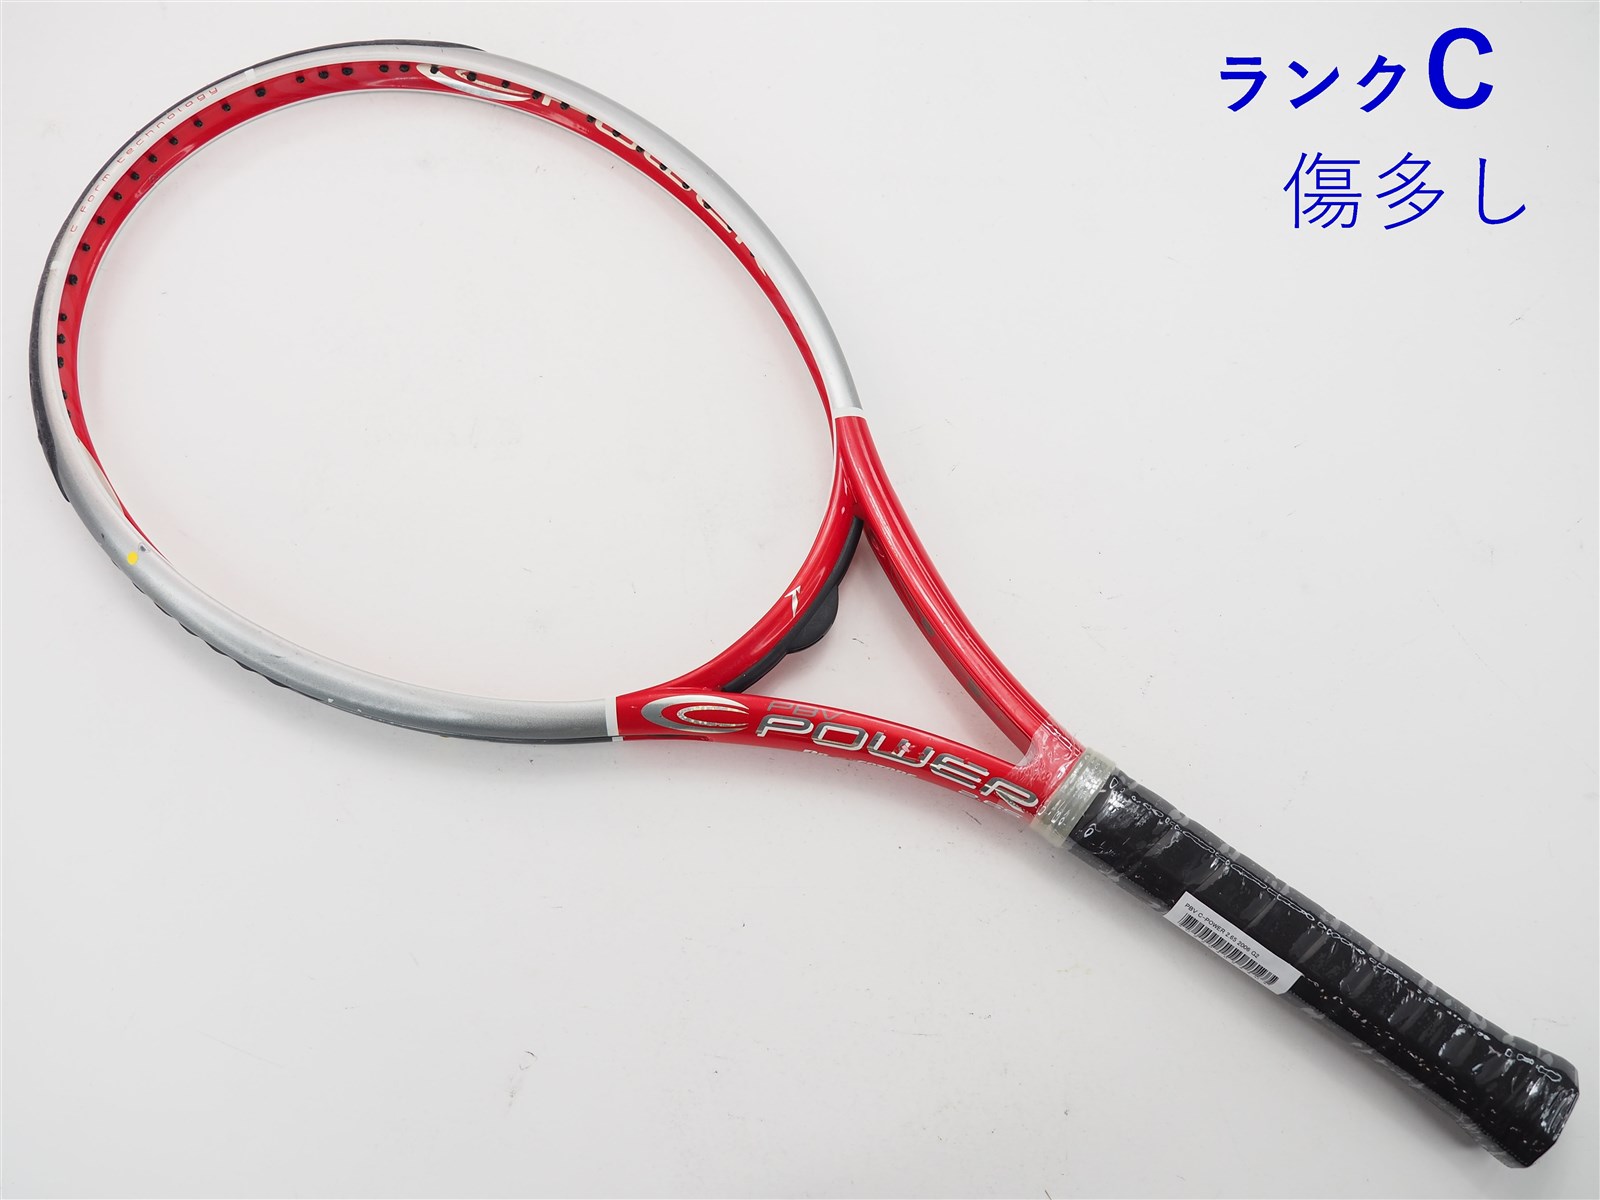 硬式テニスラケット（ブリヂストン）PBV C-POWER 2.65 - ラケット(硬式用)